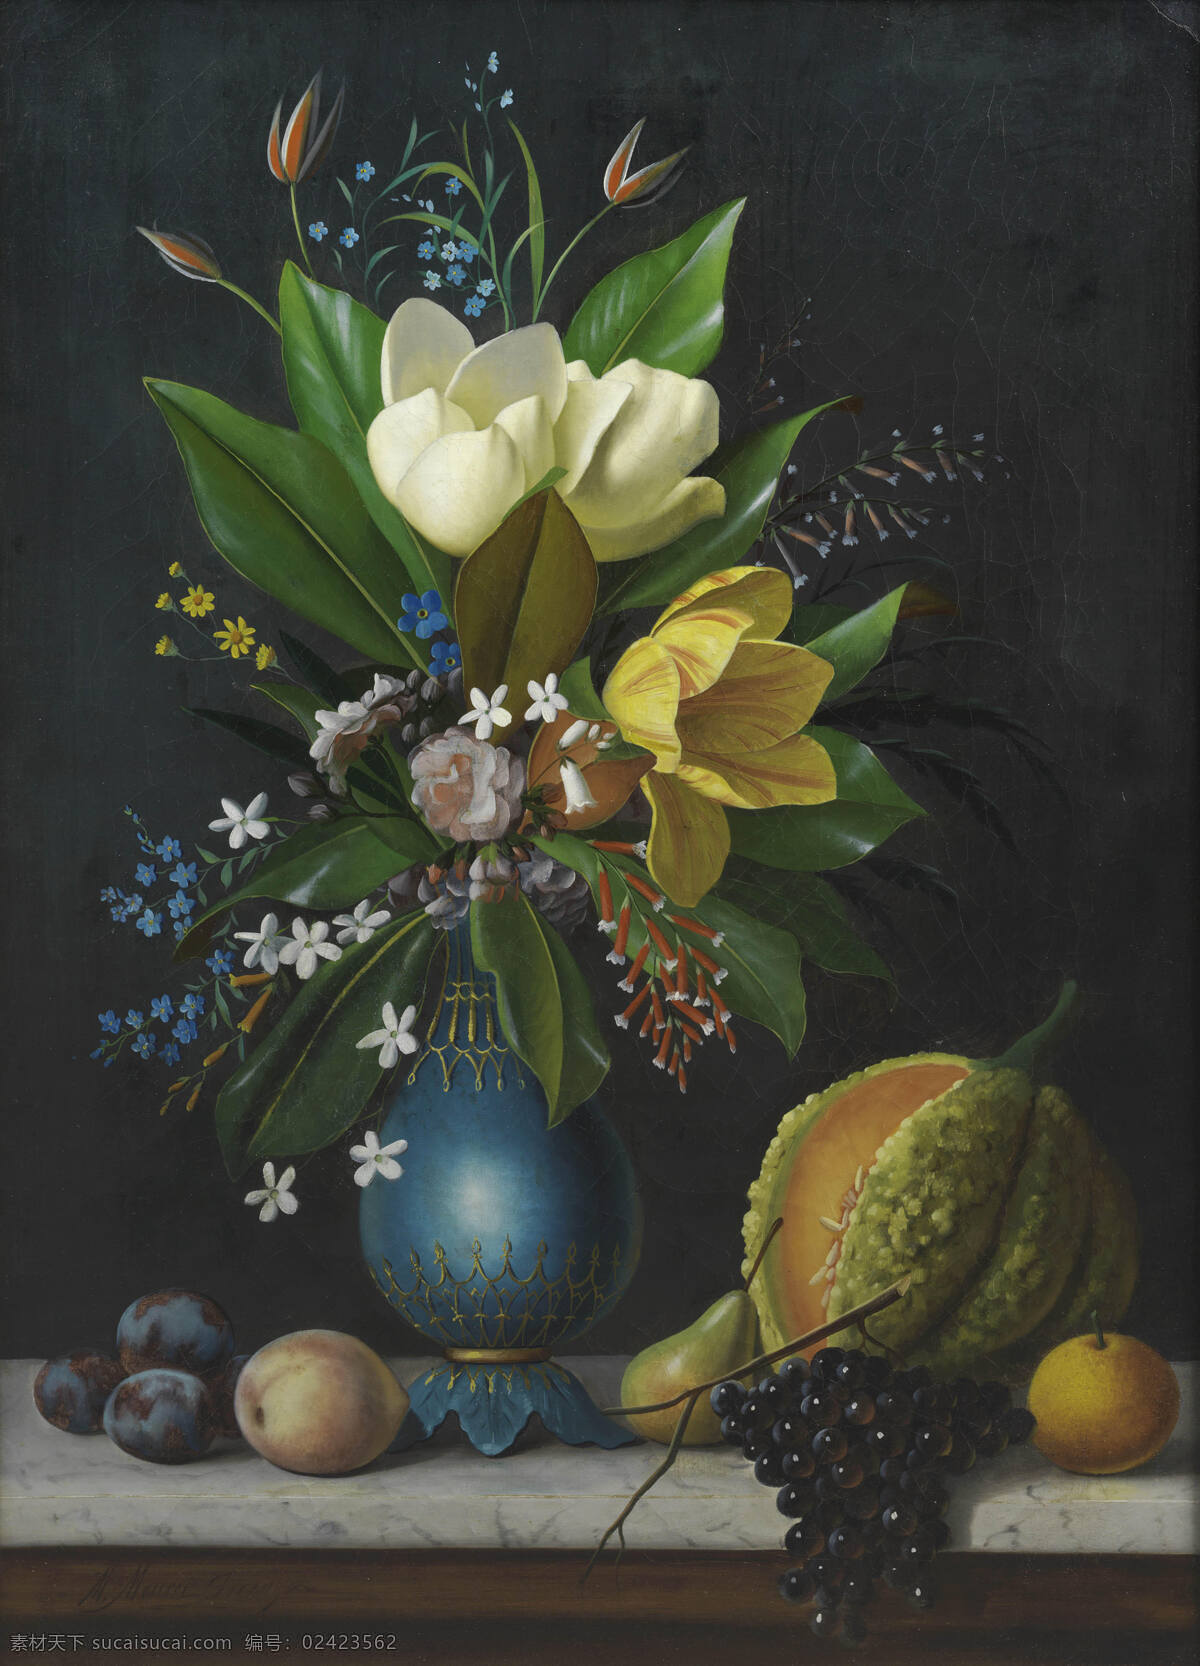 静物油画 混搭鲜花 暗色调 哈密瓜 葡萄 李桃 深蓝色花瓶 19世纪油画 油画 绘画书法 文化艺术